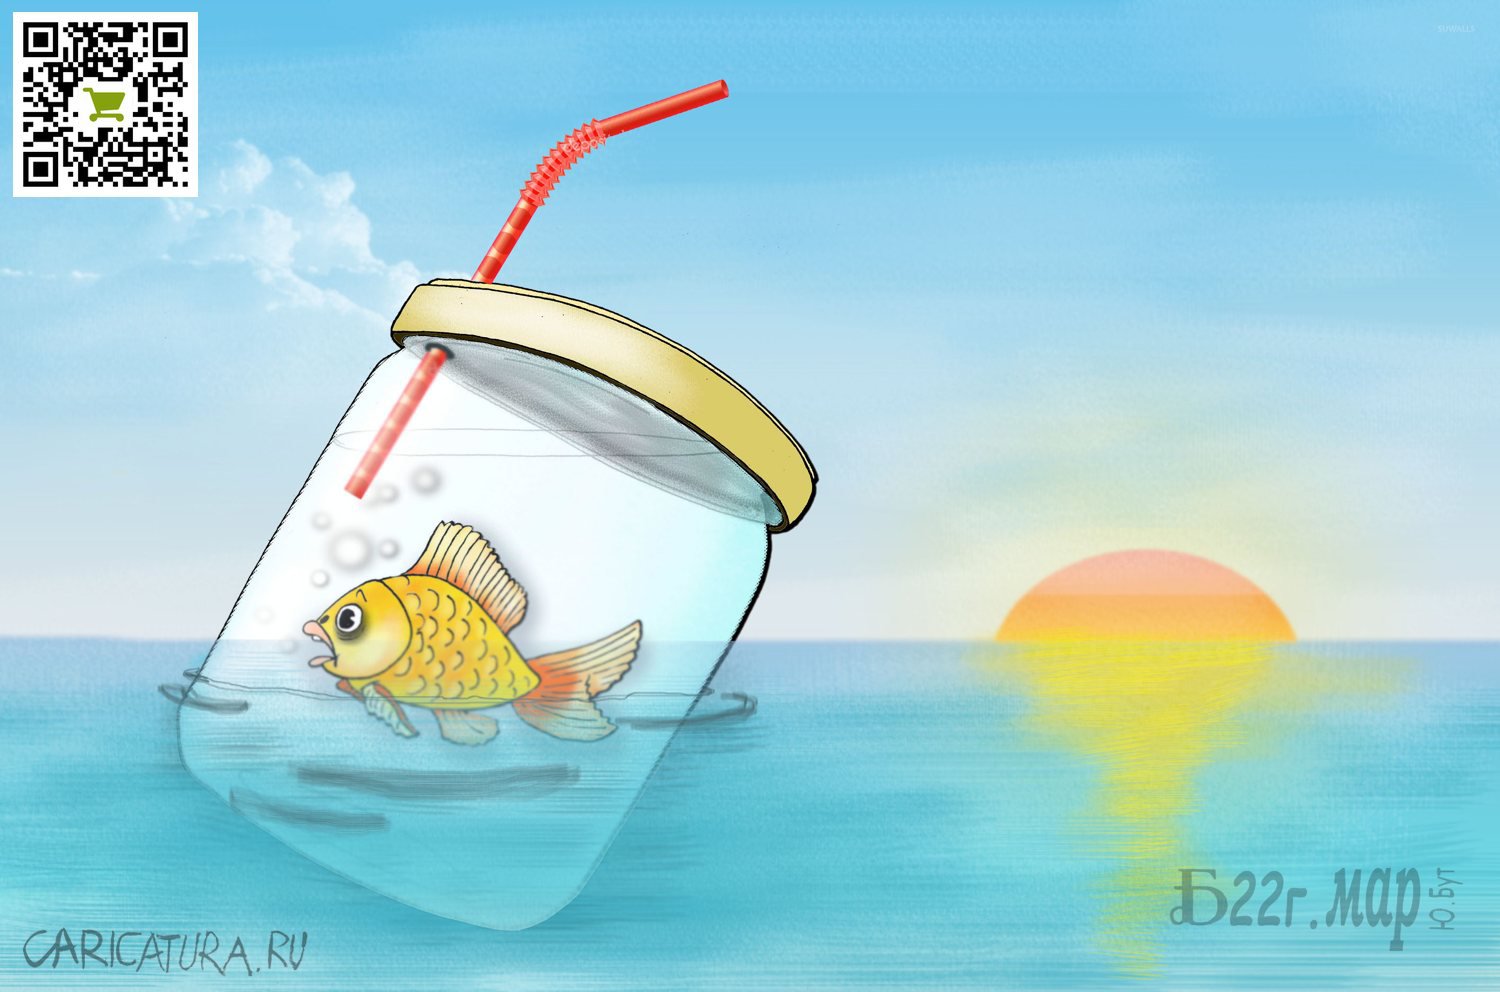 Карикатура "Про свободное плавание", Борис Демин